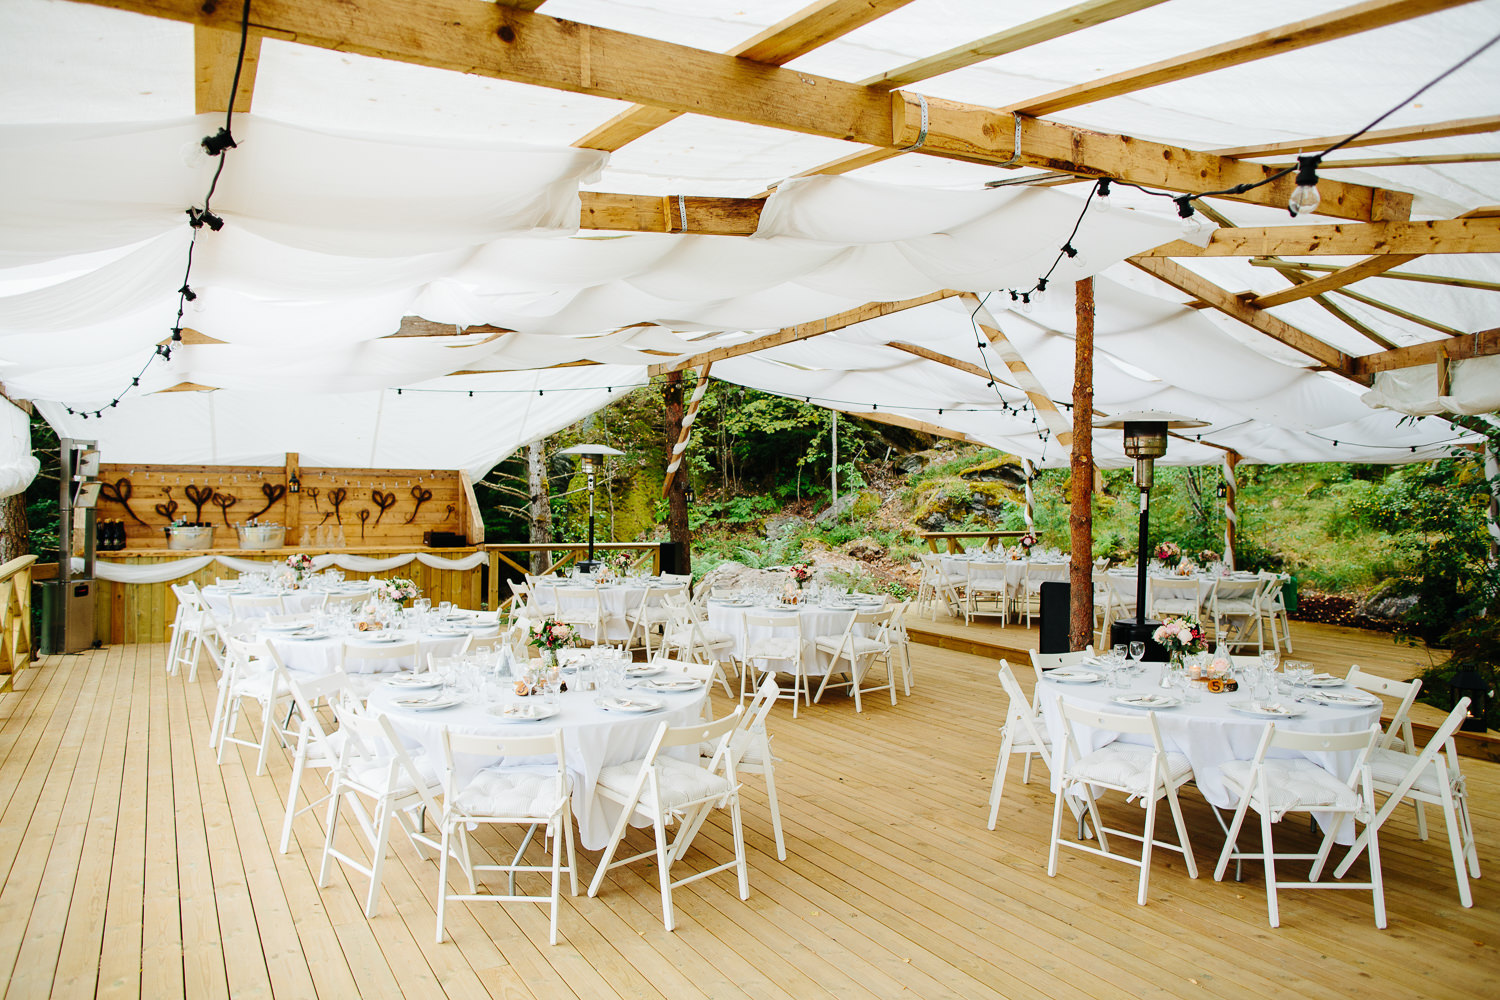  Bryllup i hagen med partytelt og hvite stoler 